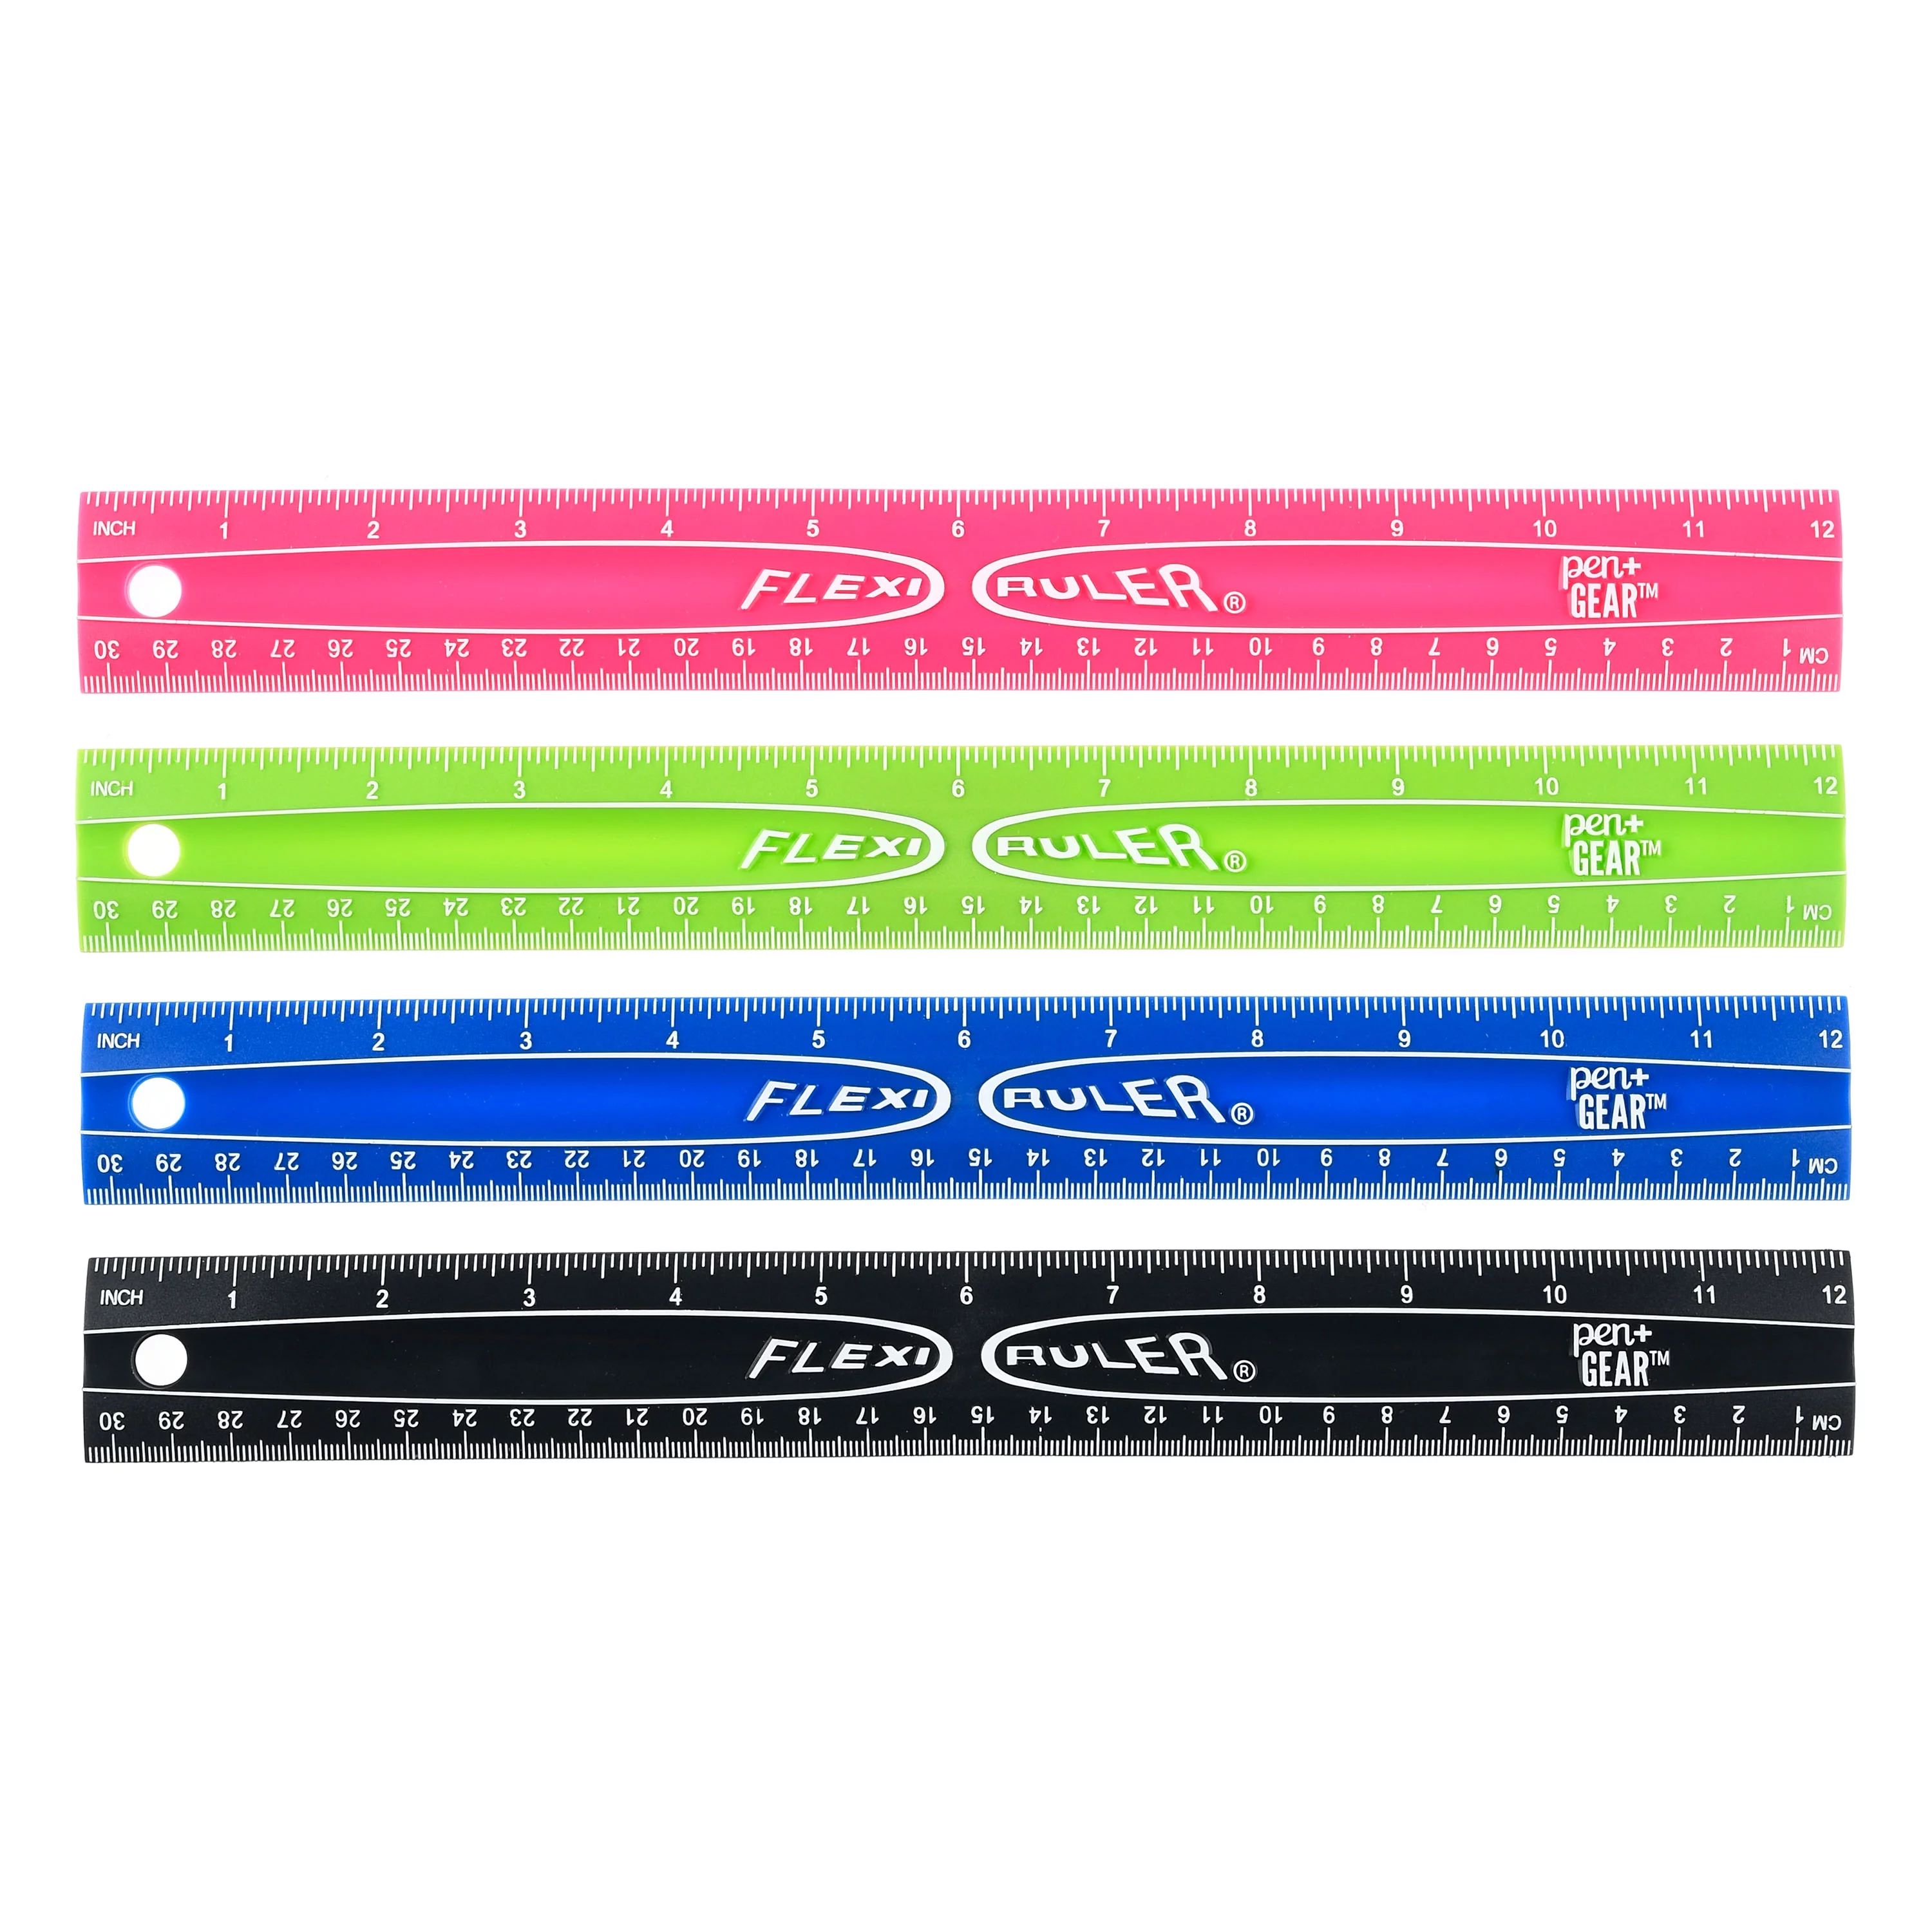 Pen + Gear Flexible Plastic Ruler, Assorted Colors - Walmart.com | Walmart (US)